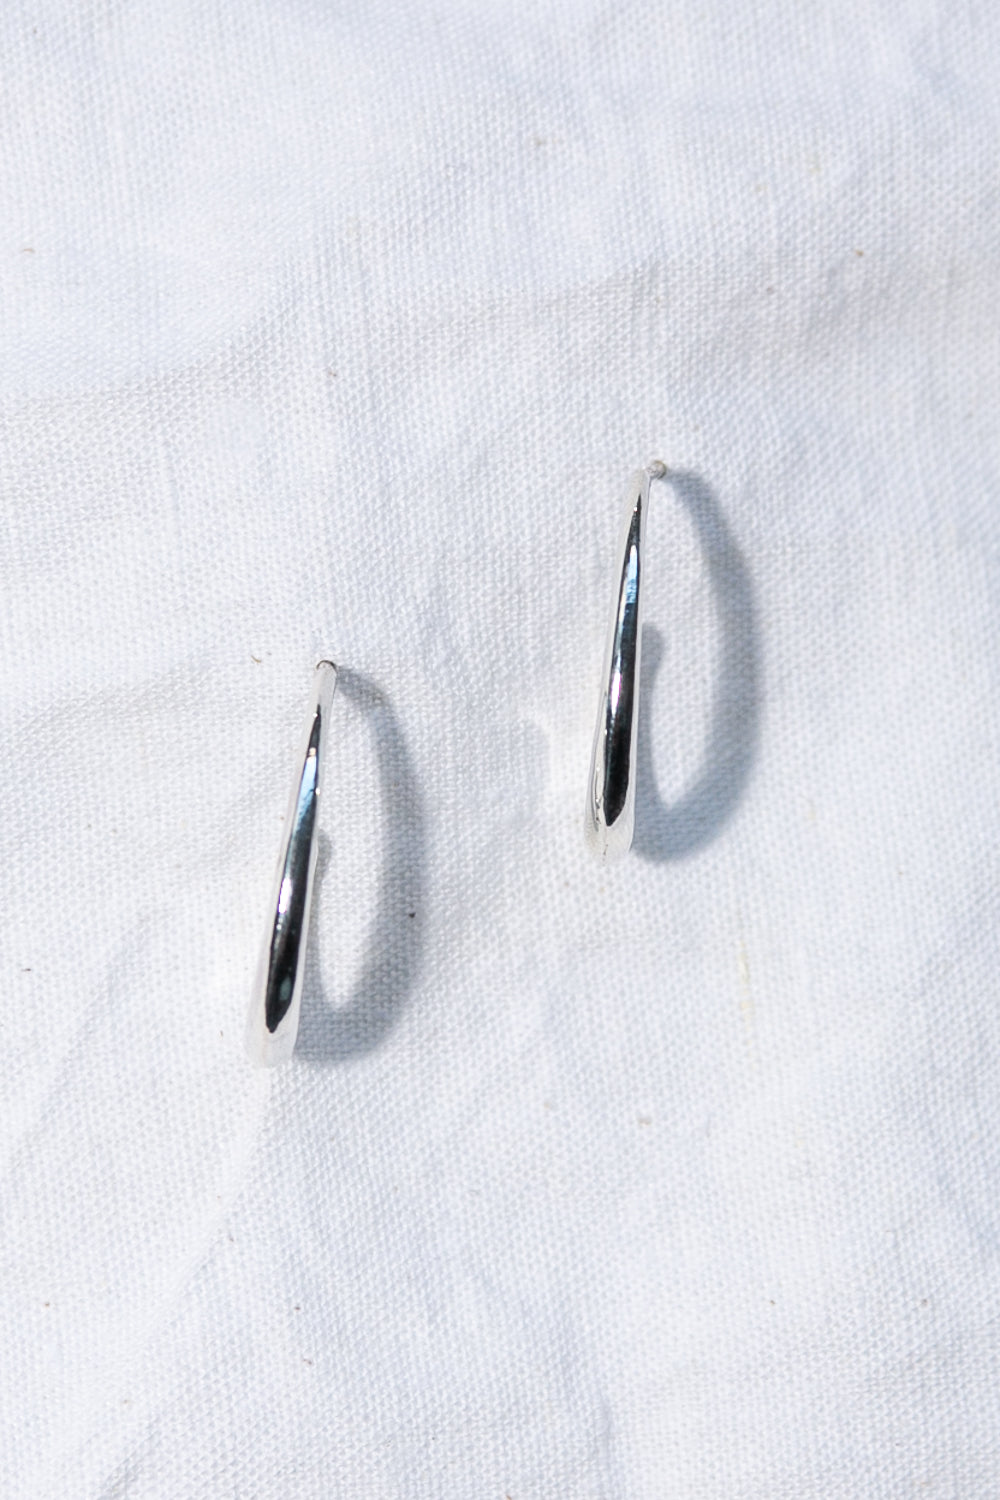 Silver Curve Earrings